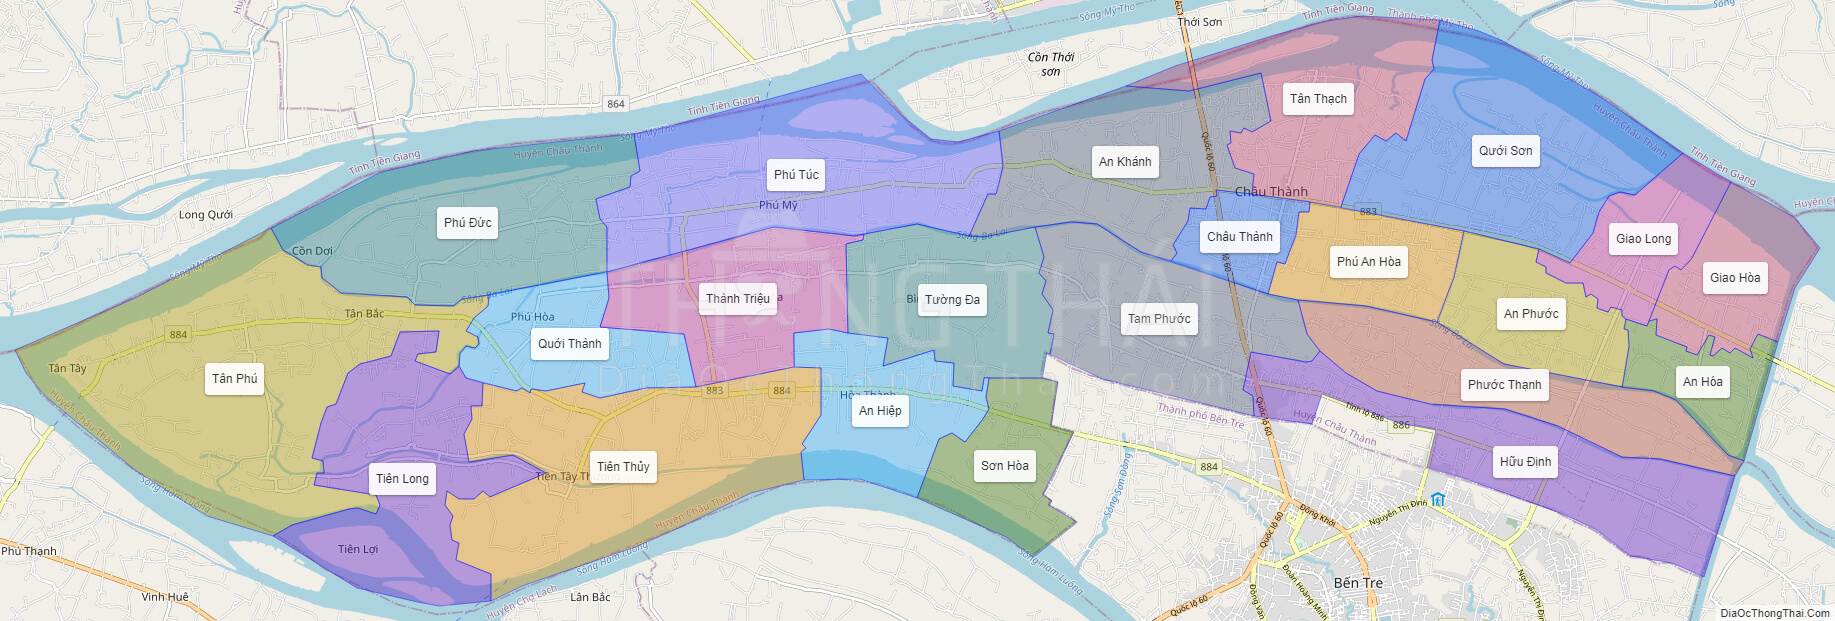 Bộ sưu tập bản đồ huyện châu thành bến tre thú vị để khám phá thành phố